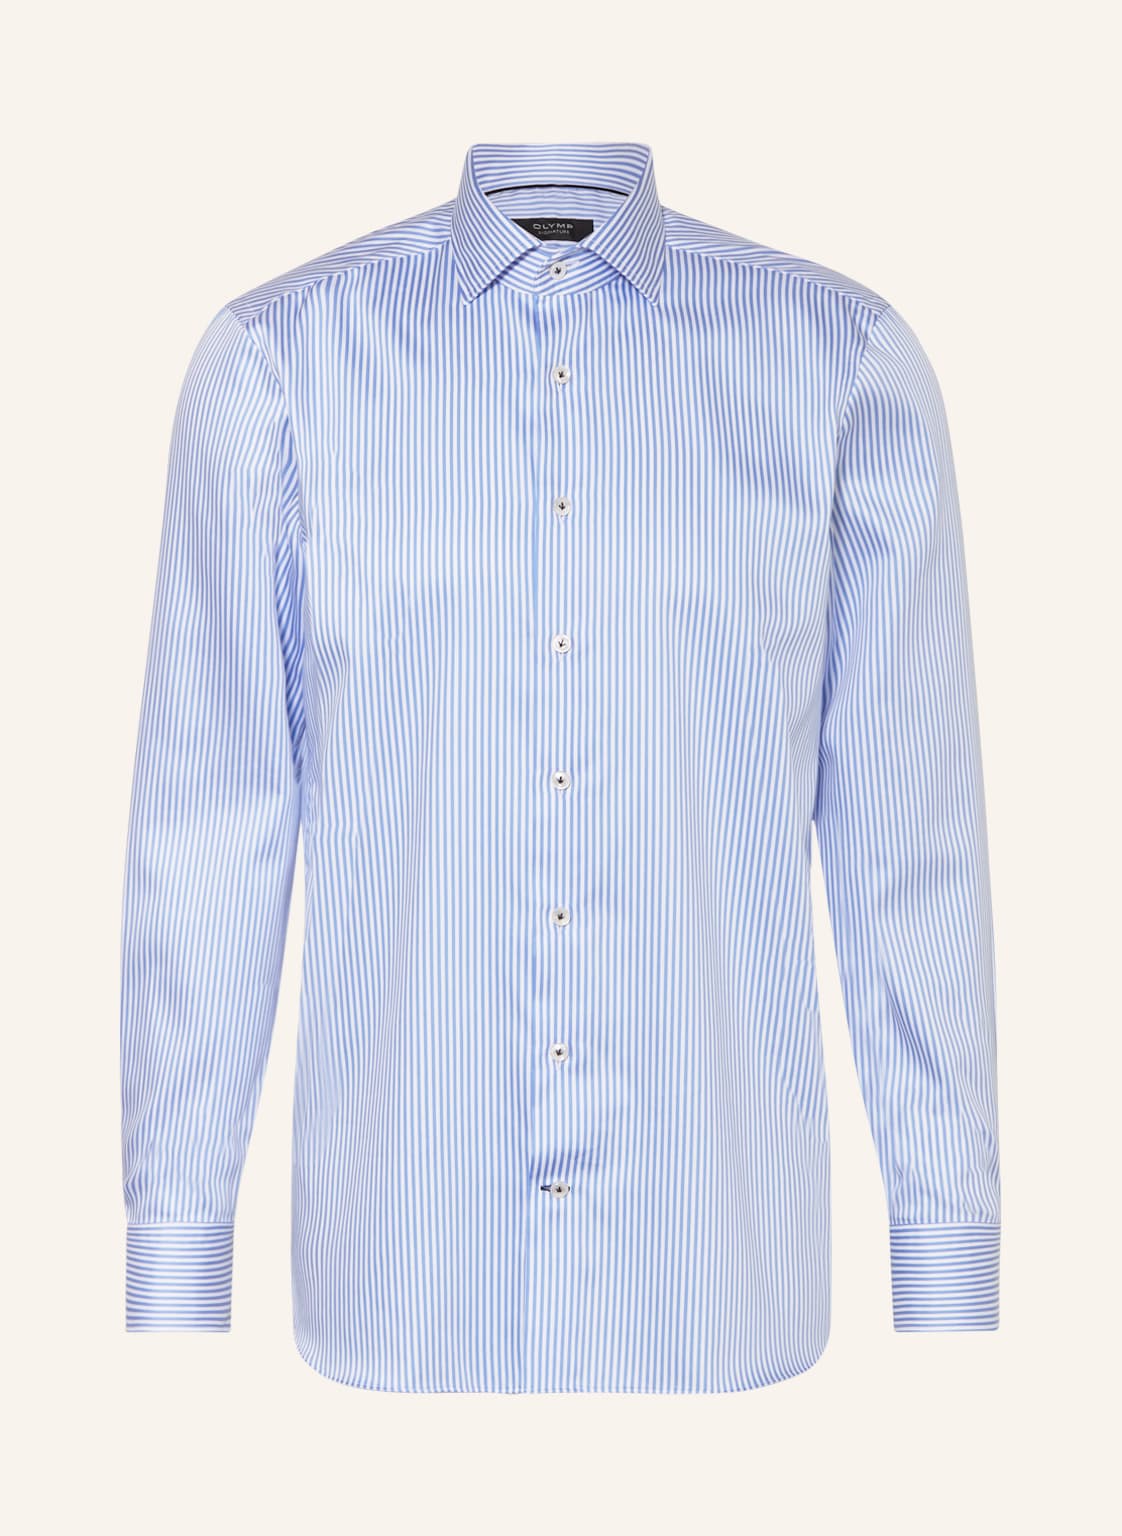 Olymp Signature Hemd Tailored Fit blau von OLYMP SIGNATURE